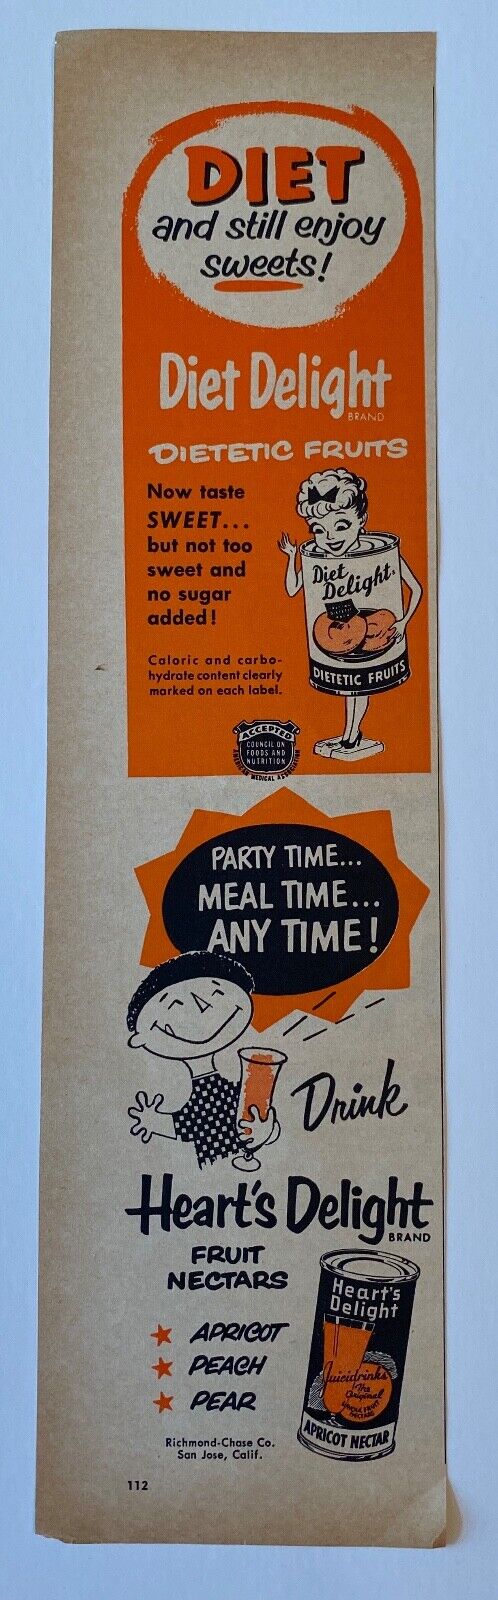 1954 Diet Delight Fruit Heart\'s Delight Drinks Fruit Nectars California  Ad 